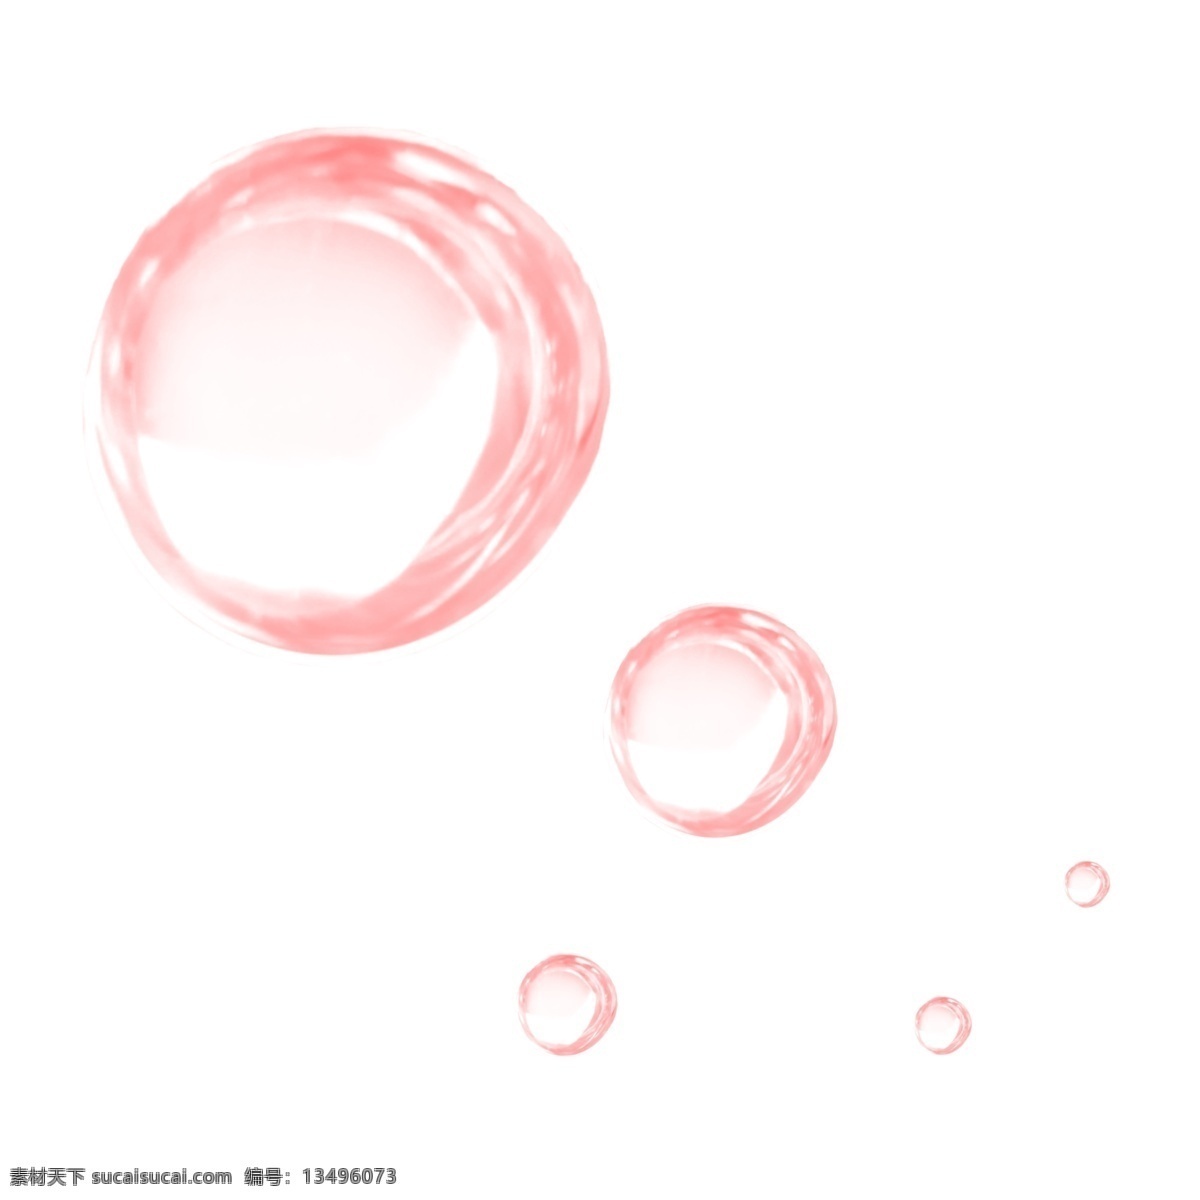 红色 透明 泡泡 漂浮 透明泡泡 banner 手账 海报 手绘 零落 飘落 气泡 水泡 插画